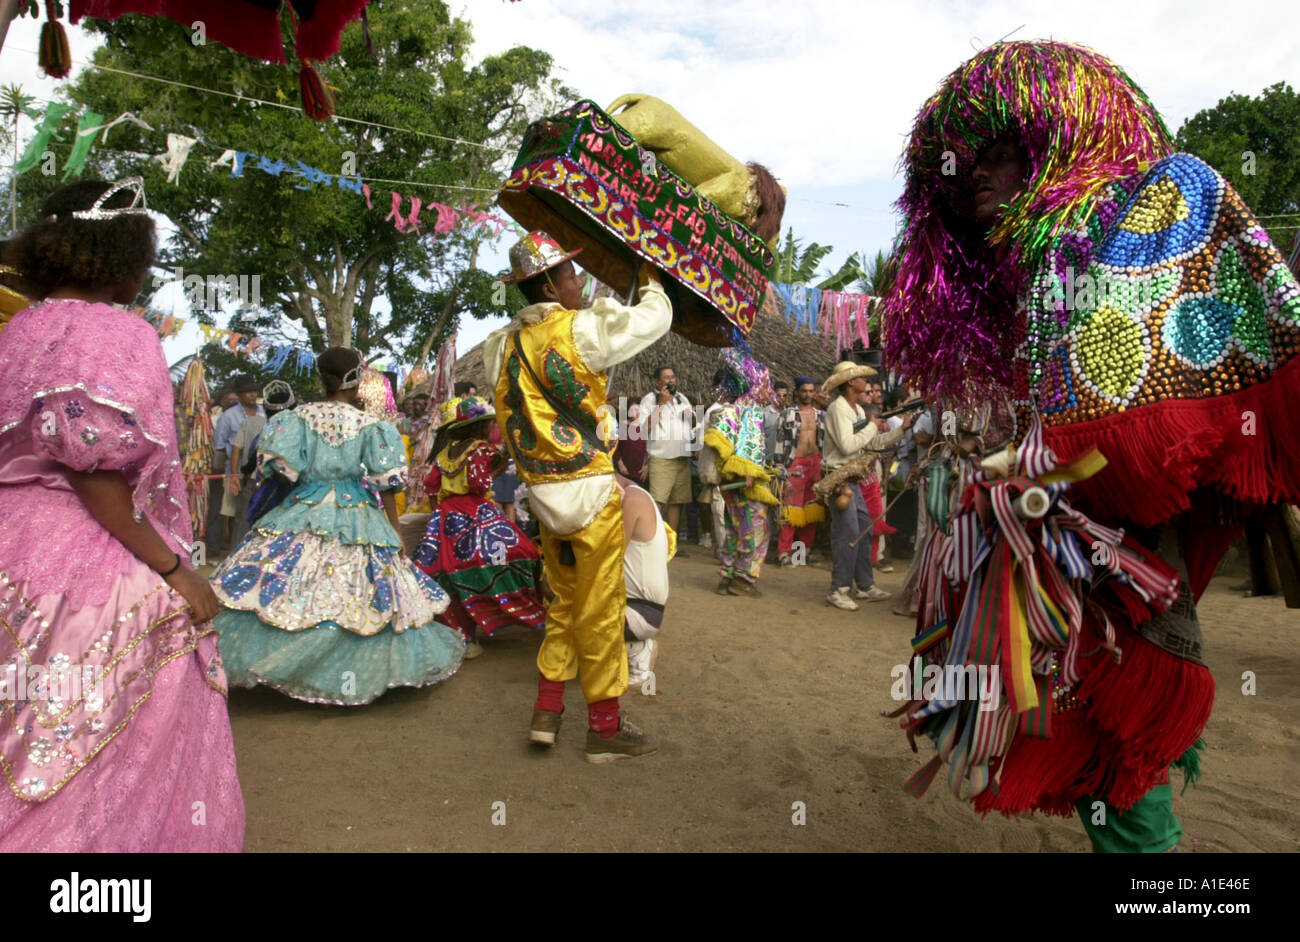 Carnaval Rural Maracatu dans Pernambuco Brésil Banque D'Images